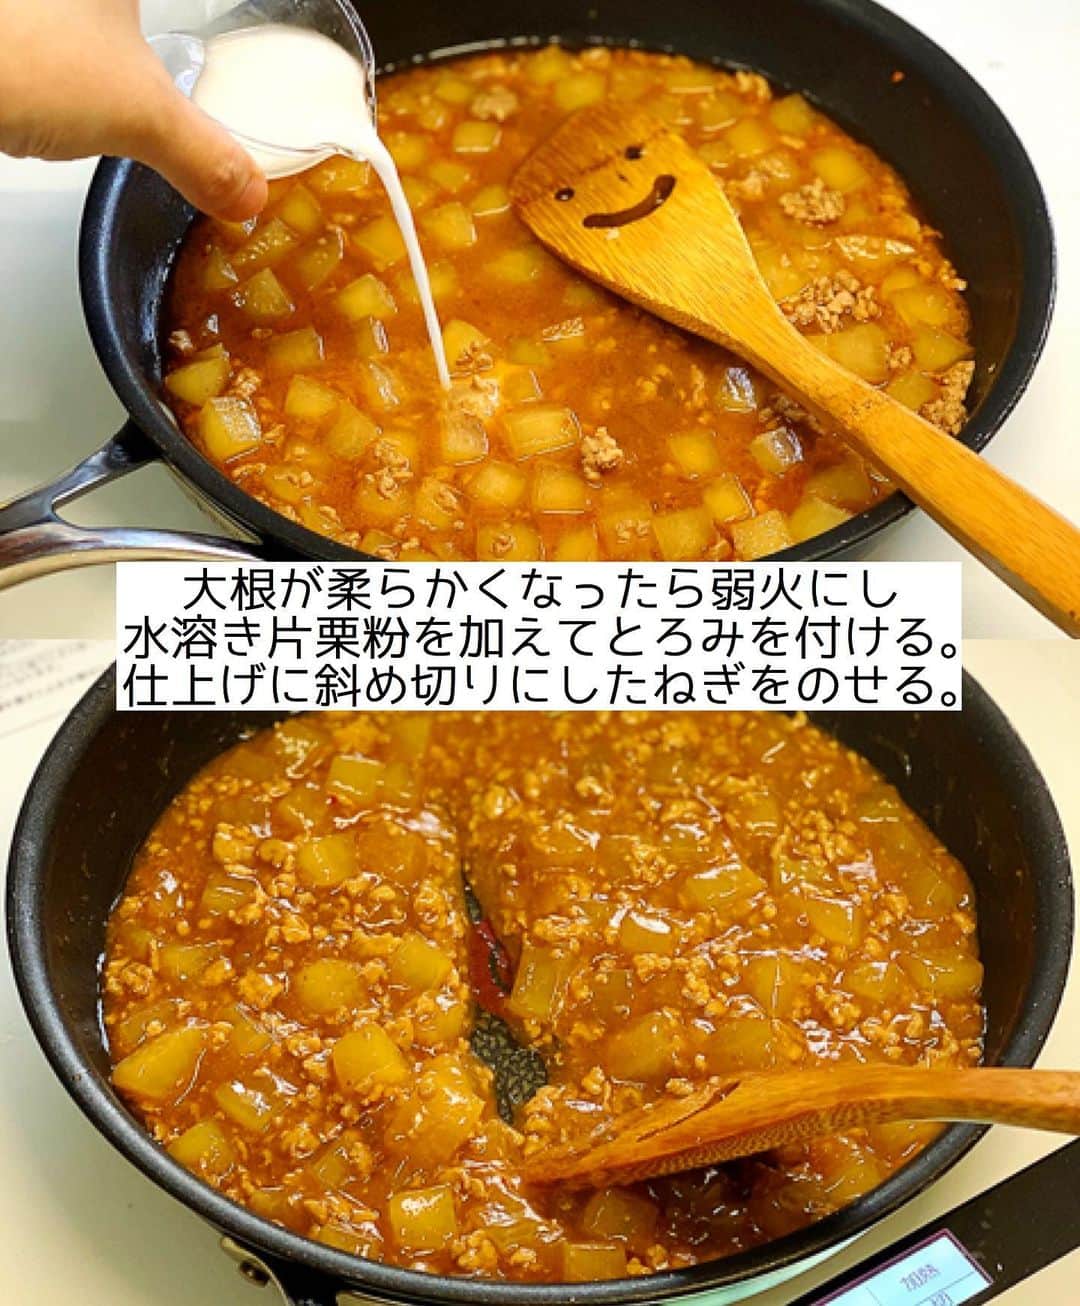 Mizuki【料理ブロガー・簡単レシピ】さんのインスタグラム写真 - (Mizuki【料理ブロガー・簡単レシピ】Instagram)「・﻿ 【#レシピ 】ーーーーーー﻿ ♡とろうま♡麻婆大根♡﻿ ーーーーーーーーーーーー﻿ ﻿ ﻿ ﻿ おはようございます(*^^*)﻿ ﻿ 今日はこの時期におすすめの﻿  \\ 麻婆大根 // のご紹介です♩﻿ ﻿ うま味たっぷりのひき肉餡と﻿ とろっとろの大根が相性抜群！﻿ 丼にしても美味しいですよ〜♡﻿ ﻿ フライパンひとつでできるので﻿ お気軽にお試し下さいね(*´艸`)﻿ ﻿ ﻿ ﻿ ＿＿＿＿＿＿＿＿＿＿＿＿＿＿＿＿＿＿＿＿﻿ 【2〜3人分】﻿ 豚ひき肉...150g﻿ 大根...1/3本(400g)﻿ ごま油...大1﻿ 豆板醤...小1/2﻿ ●水...300ml﻿ ●酒・醤油・味噌...各大1﻿ ●砂糖・鶏がらスープ...各小1﻿ ●にんにくチューブ...2cm﻿ 片栗粉...大1﻿ 万能ねぎ...適量﻿ ﻿ 1.大根は1.5cm角に切る。片栗粉を水大2(分量外)で溶いて水溶き片栗粉を作る。﻿ 2.フライパンにごま油、豆板醤、ひき肉、大根を入れ、中火にかけて炒める。大根が透き通ってきたら●を加え、蓋をして弱めの中火で12分程煮る。﻿ 3.大根が柔らかくなったら弱火にし、水溶き片栗粉を加えてとろみを付ける。器に盛り、斜め切りにしたねぎをのせる。﻿ ￣￣￣￣￣￣￣￣￣￣￣￣￣￣￣￣￣￣￣￣﻿ ﻿ ﻿ ﻿ ﻿ 《ポイント》﻿ ♦︎大根は透き通ってくるまでしっかり炒めて下さい♩﻿ ♦︎水溶き片栗粉を加える時は必ず弱火にし、手早く混ぜてとろみを付けて下さい♩﻿ ♦︎合わせ味噌(マルコメ)を使用しています♩﻿ ♦︎辛さは控えめですが、お好みで豆板醤なしでも美味しいです♩﻿ ﻿ ﻿ ﻿ ﻿ ﻿ ﻿ ﻿ ﻿ 📕新刊発売中📕﻿ 【ラクしておいしい！#1品晩ごはん 】﻿ ￣￣￣￣￣￣￣￣￣￣￣￣￣￣￣￣￣﻿ 私たちだってヘトヘトな日がある•••﻿ 毎日何品も作っていられない•••﻿ もうごはんに悩みたくない😢﻿ そんな時、1品ごはんはいかがでしょう？﻿ というご提案です✨﻿ ﻿ 【1品ごはん】は﻿ 副菜いらずで全てがシンプル！﻿ ￣￣￣￣￣￣￣￣￣￣￣￣￣￣￣￣￣￣﻿ 一品つくるだけでいいから﻿ 献立を考えなくてよし！﻿ ￣￣￣￣￣￣￣￣￣￣￣￣￣￣￣￣￣￣﻿ 悩まない、疲れない、﻿ 気力や時間がなくてもなんとかなる！﻿ ￣￣￣￣￣￣￣￣￣￣￣￣￣￣￣￣￣￣﻿ そんな頼りになる﻿ 便利なお助けごはんです☺️💕﻿ (ハイライトに🔗貼っています✨)﻿ ￣￣￣￣￣￣￣￣￣￣￣￣￣￣￣￣￣﻿ ﻿ ﻿ ﻿ ﻿ ﻿ ⭐️発売中⭐️﻿ ＿＿＿＿＿＿＿＿＿＿＿＿＿＿＿＿＿＿﻿ しんどくない献立、考えました♩﻿ \15分でいただきます/﻿ 📕#Mizukiの2品献立 📕﻿ ﻿ 和食をもっとカジュアルに♩﻿ \毎日のごはんがラクになる/﻿ 📘#Mizukiの今どき和食 📘﻿ ﻿ ホケミレシピの決定版♩﻿ \はじめてでも失敗しない/﻿ 📙#ホットケーキミックスのお菓子 📙﻿ ﻿ NHKまる得マガジンテキスト☆﻿ ホットケーキミックスで﻿ 📗絶品おやつ&意外なランチ📗﻿ ￣￣￣￣￣￣￣￣￣￣￣￣￣￣￣￣￣￣﻿ ﻿ ﻿ ﻿ ＿＿＿＿＿＿＿＿＿＿＿＿＿＿＿＿＿＿﻿ レシピを作って下さった際や﻿ レシピ本についてのご投稿には﻿ タグ付け( @mizuki_31cafe )して﻿ お知らせいただけると嬉しいです😊💕﻿ ￣￣￣￣￣￣￣￣￣￣￣￣￣￣￣￣￣￣﻿ ﻿ ﻿ ﻿ ﻿ #麻婆大根#大根#マーボー#ひき肉#Mizuki#簡単レシピ#時短レシピ#節約レシピ#料理#フーディーテーブル#マカロニメイト#おうちごはん#デリスタグラマー#料理好きな人と繋がりたい#おうちごはんlover#写真好きな人と繋がりたい#foodpic#cooking#recipe#lin_stagrammer#foodporn#yummy#f52grams#麻婆大根m」1月13日 7時01分 - mizuki_31cafe